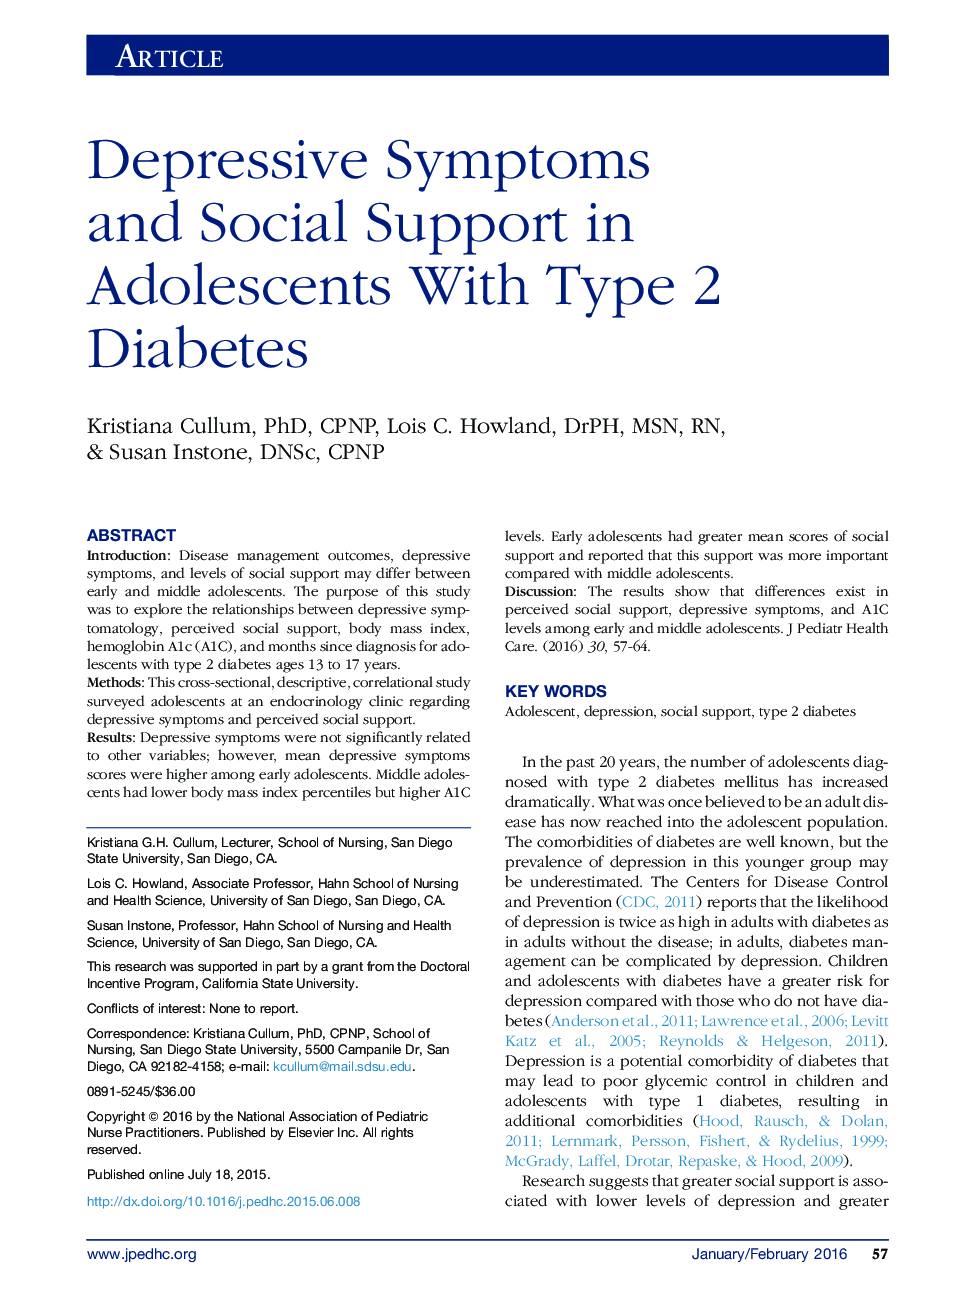 علائم افسردگی و حمایت اجتماعی در نوجوانان مبتلا به دیابت نوع 2